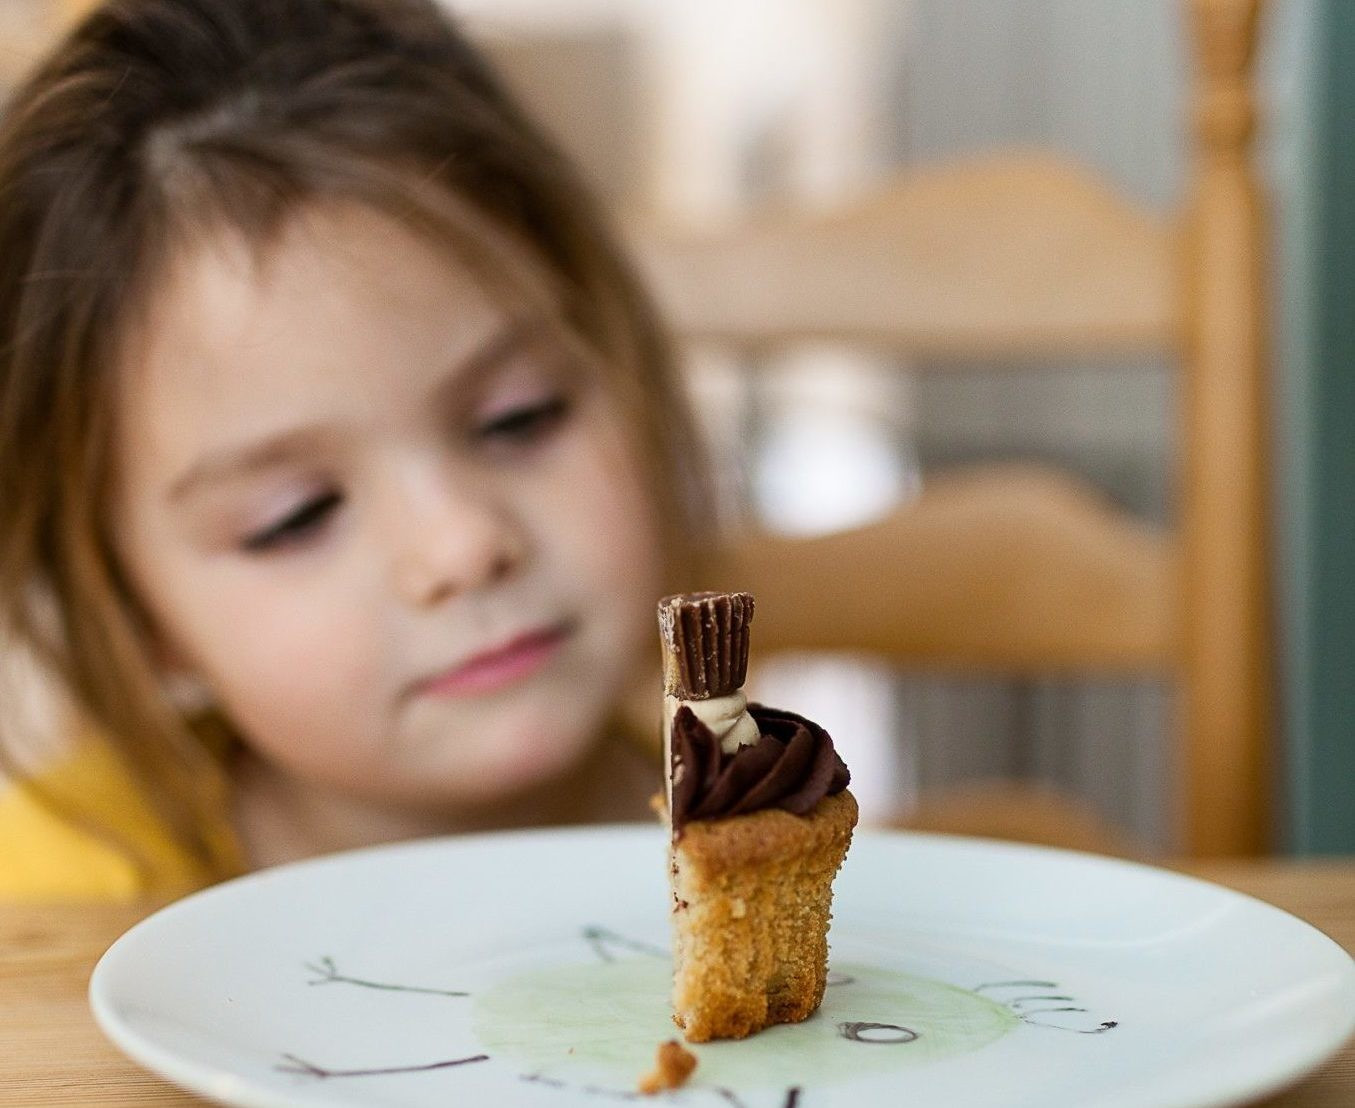 Как посадить ребенка на диету? Советы эксперта